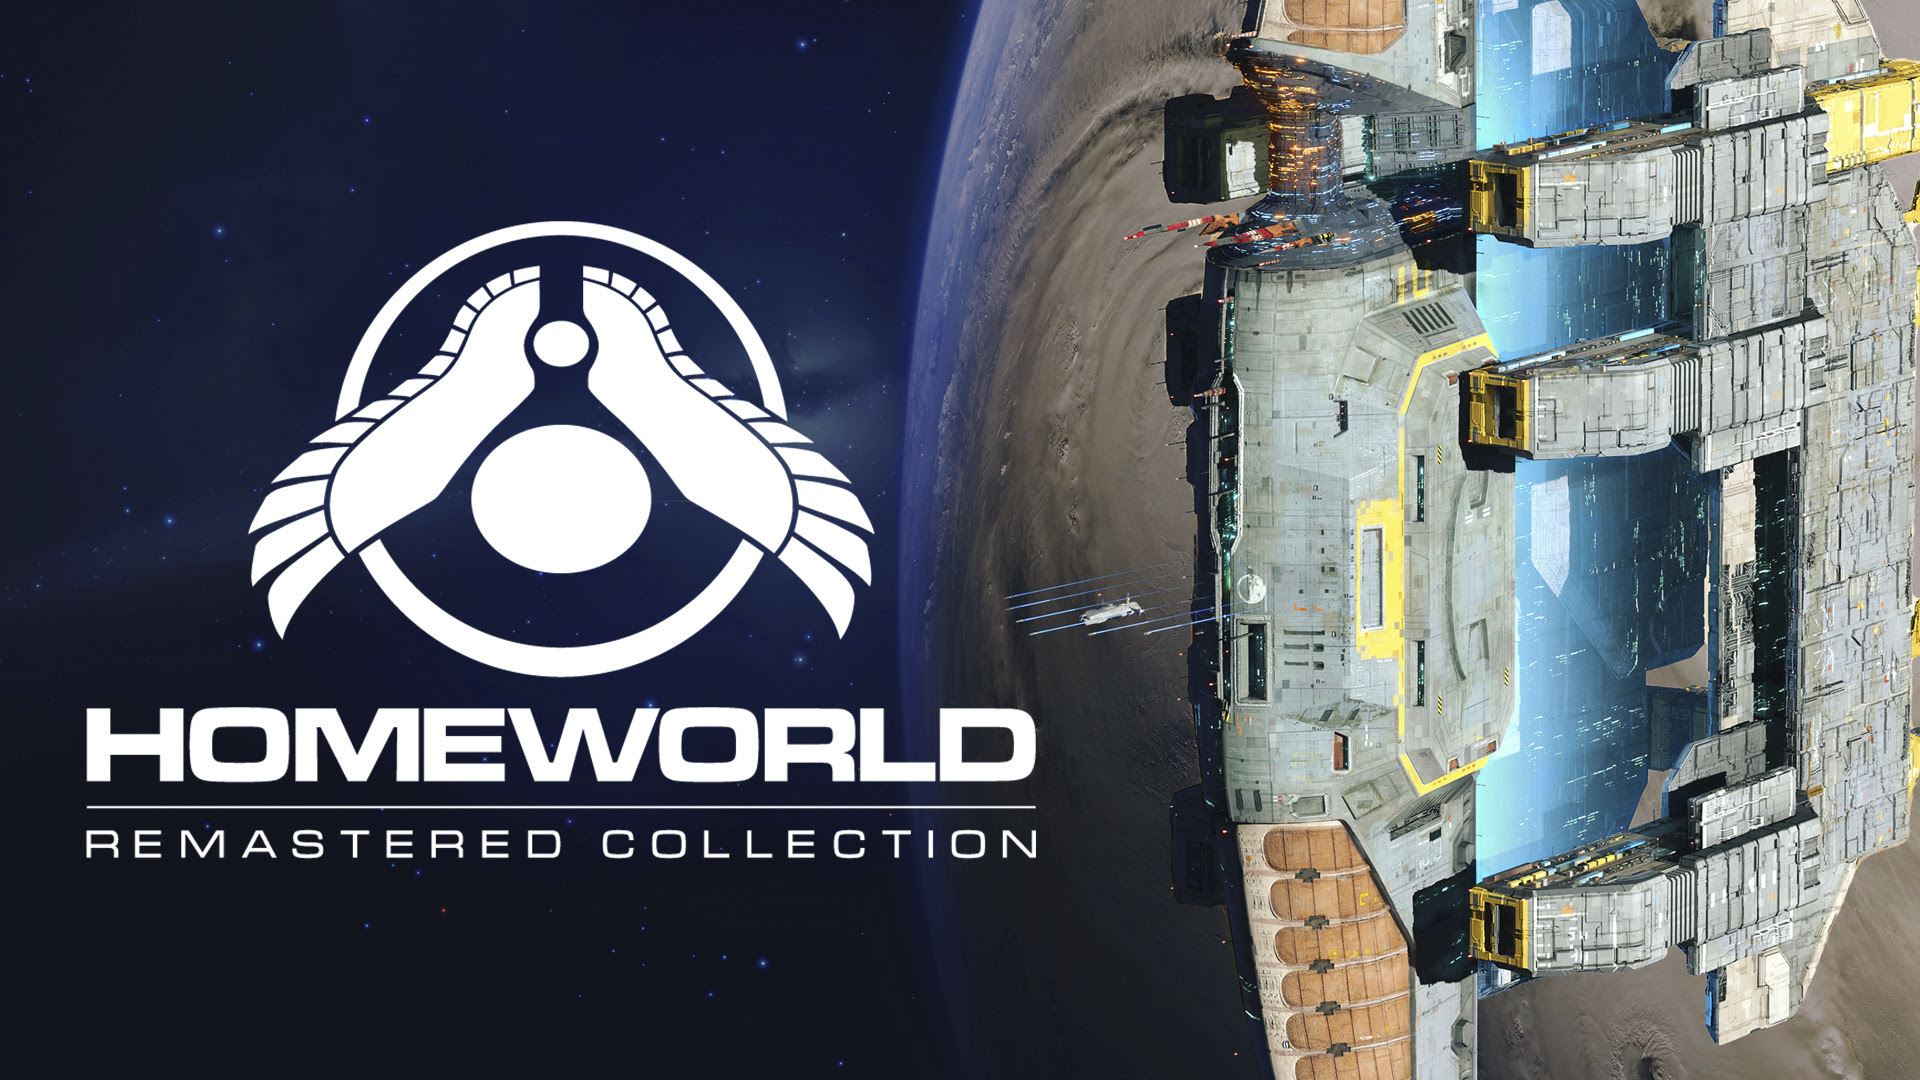 Homeworld Remastered arribarà a Steam, gratis per temps limitat